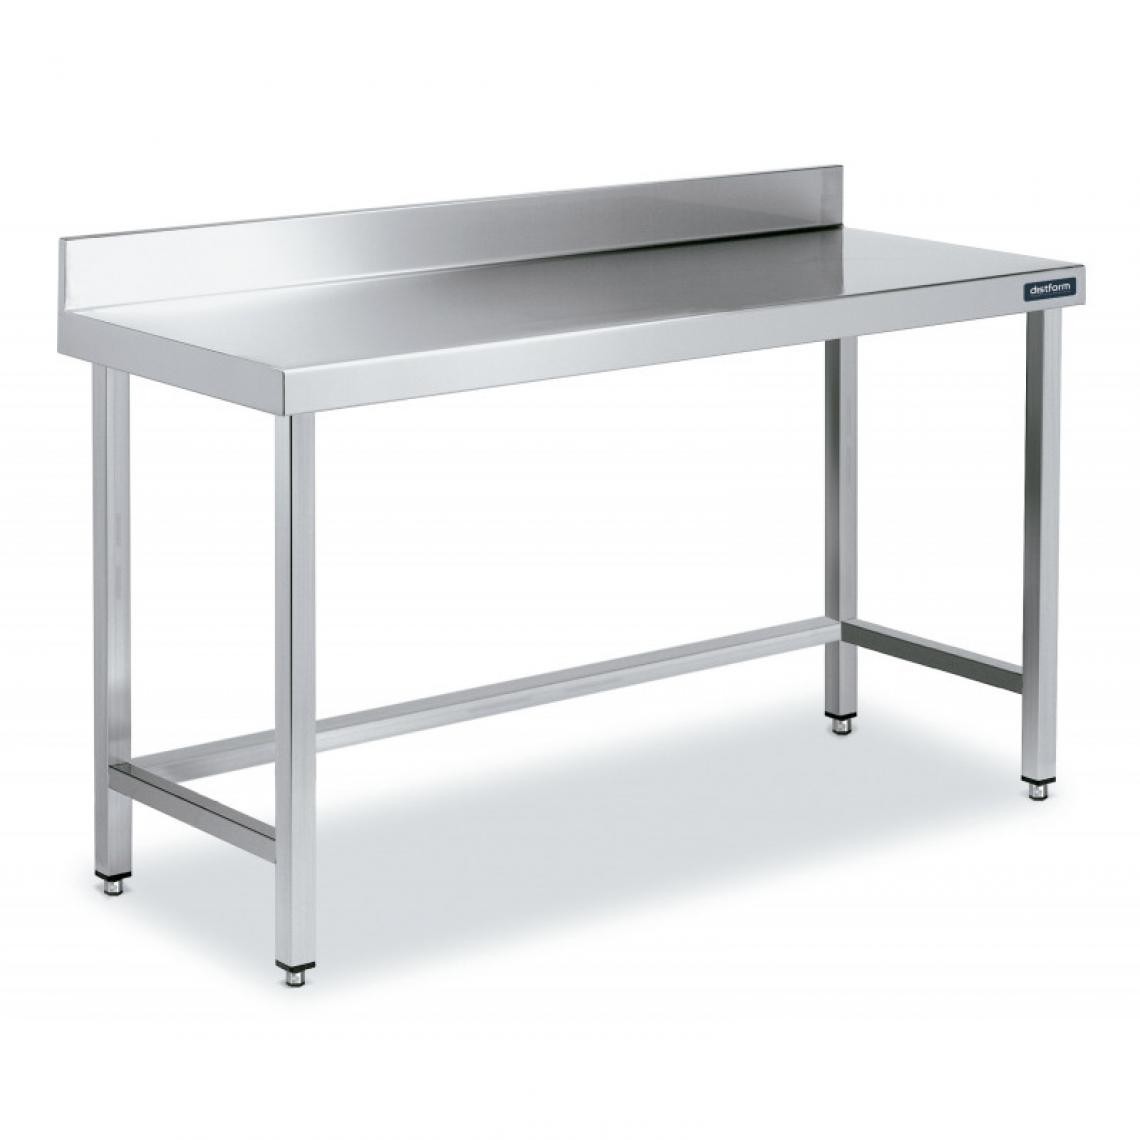 DISTFORM - Table Inox de Travail avec Dosseret Gamme 900 - Distform - Acier inoxydable1100x900 - Tables à manger